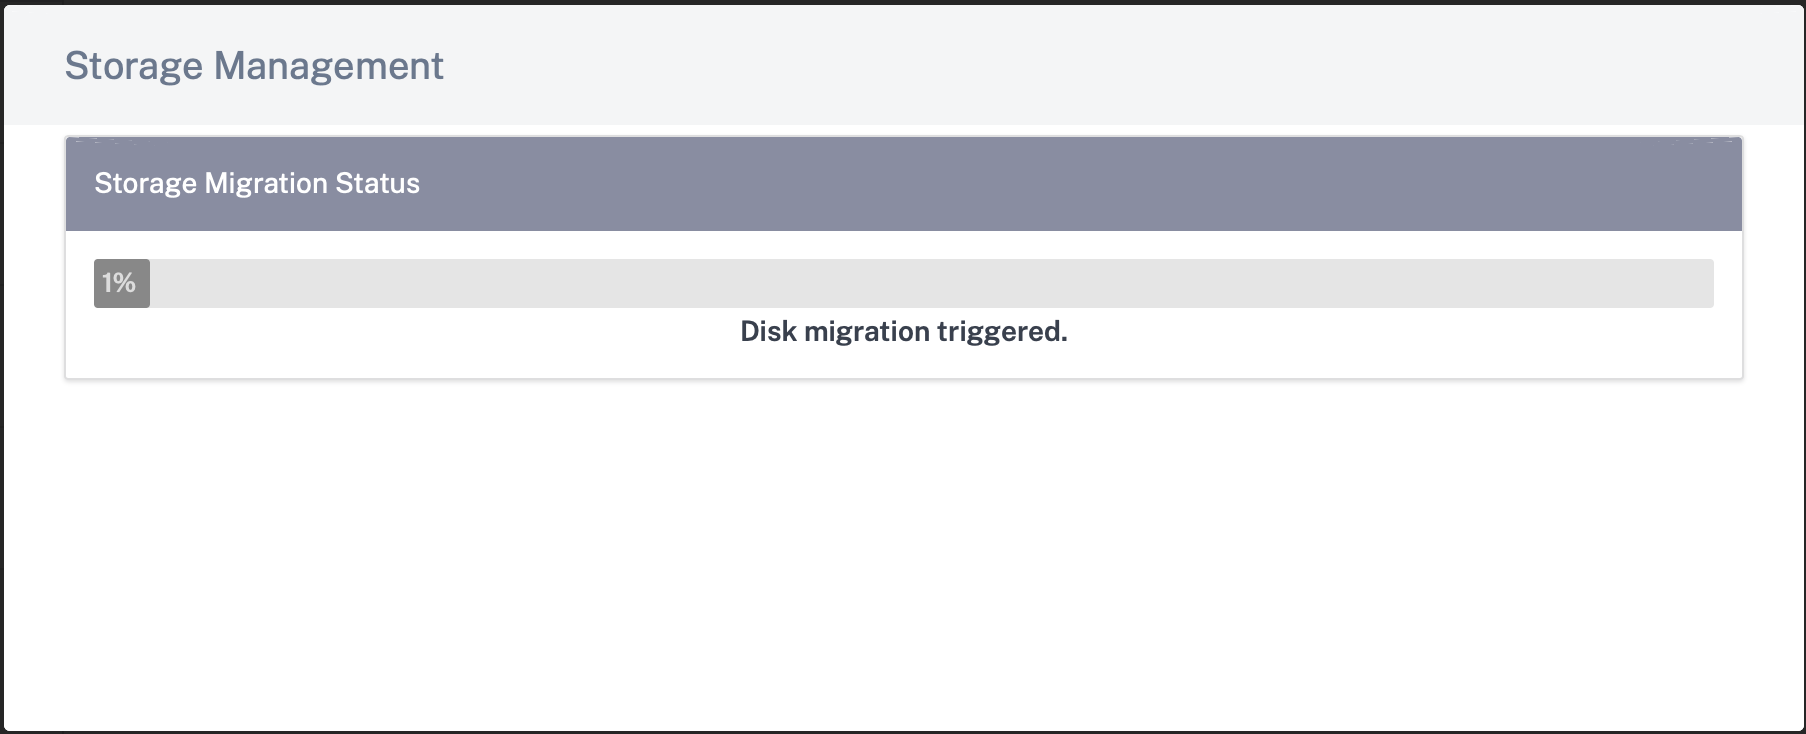 Disk migration triggered